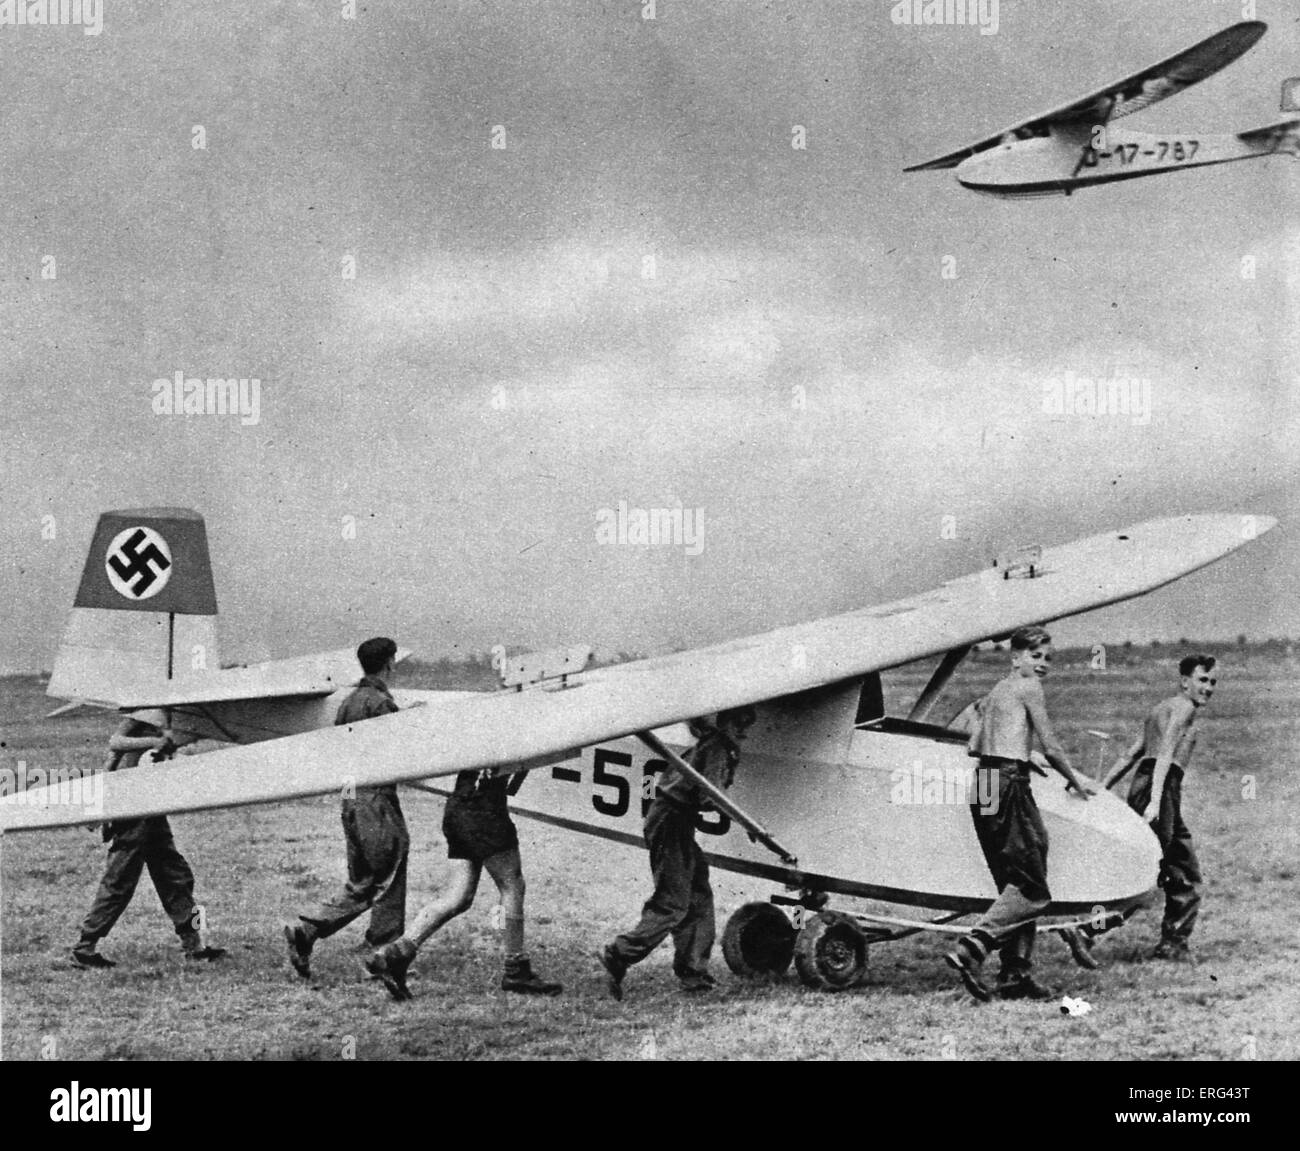 Stuka-Flugzeug ist in Position auf Rädern. Hakenkreuz auf Flügeln. Wiener Illustrierte 2. September 1942. Bildunterschrift lautet Wahrend Notsch Stockfoto